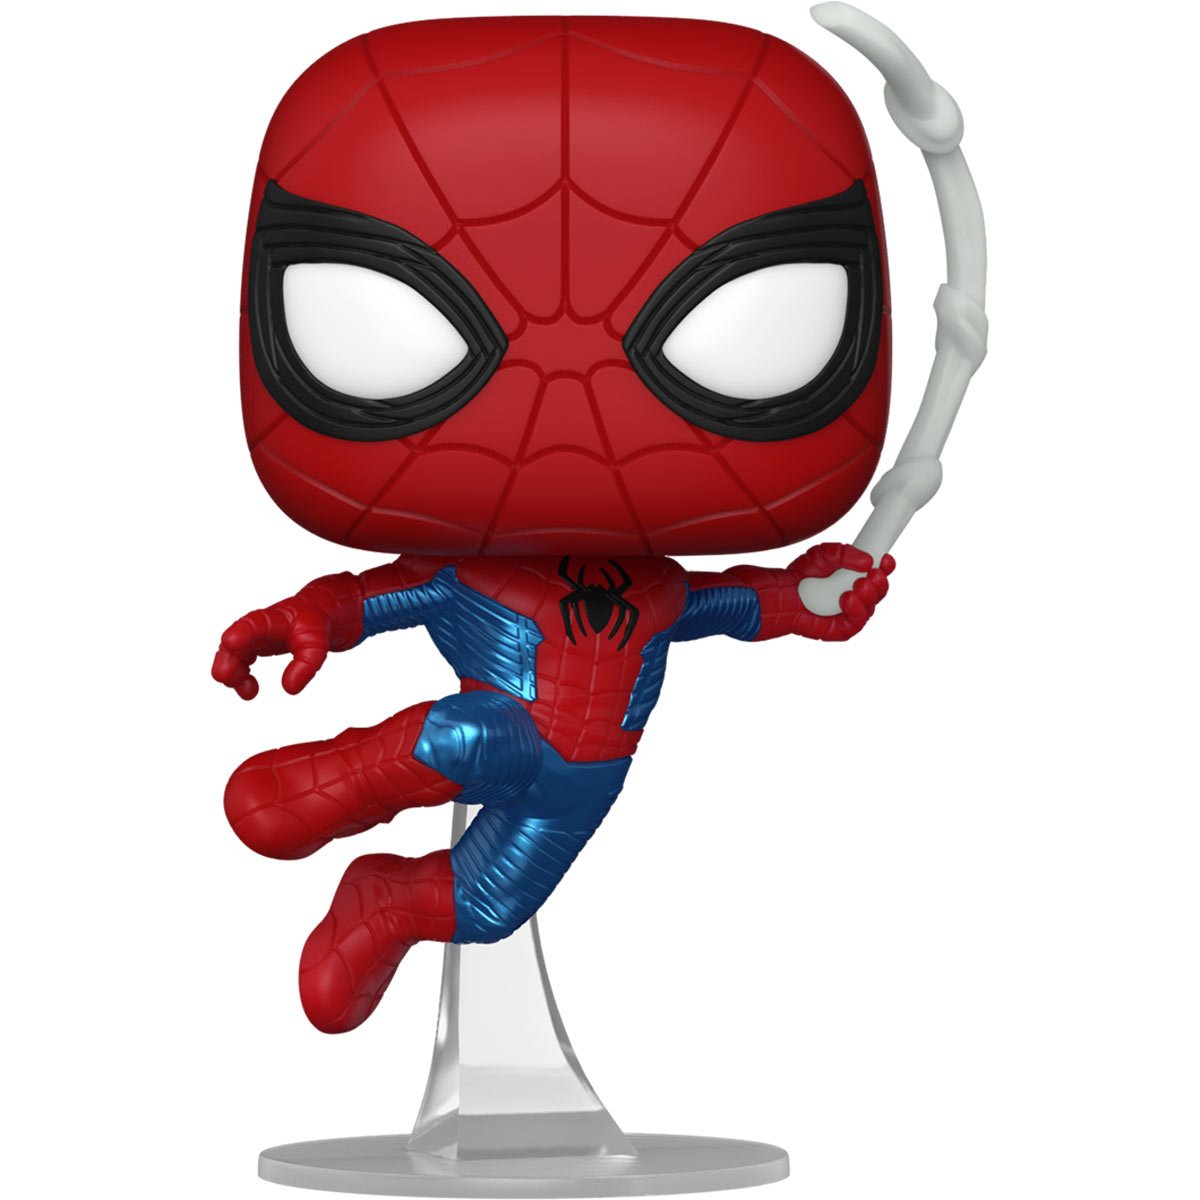 Valentine's Spider Man Funko Pop Marvel Preorder